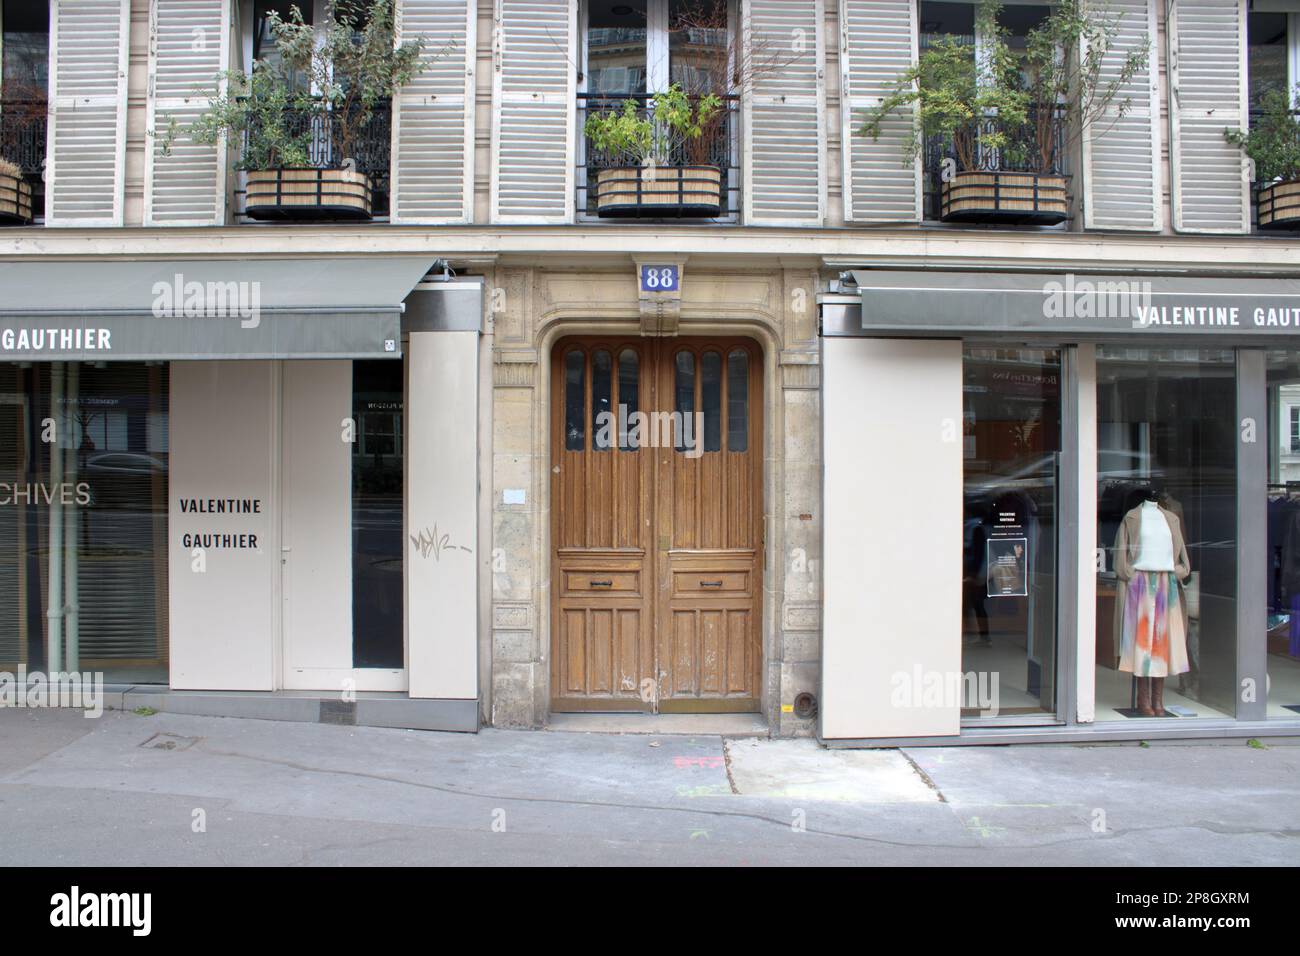 Vue typique du centre commercial parisien ici situé sur le boulevard Beaumarchais situé dans le 11th arrondissement de Paris France. Banque D'Images